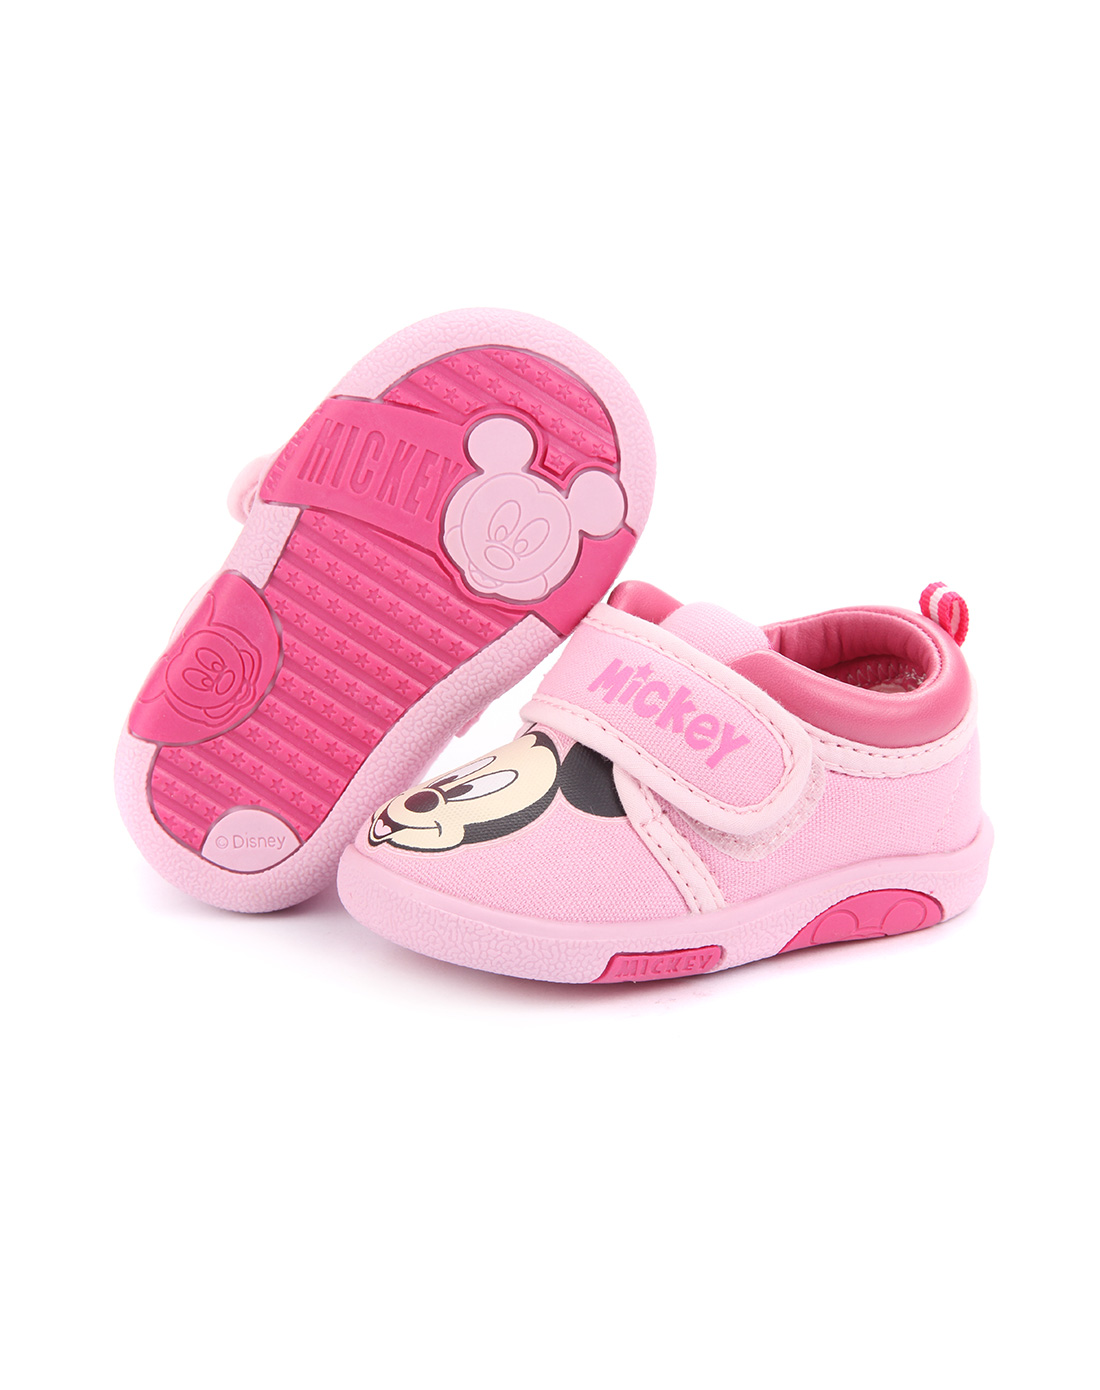 迪士尼 女幼童休闲鞋粉色-唯品会